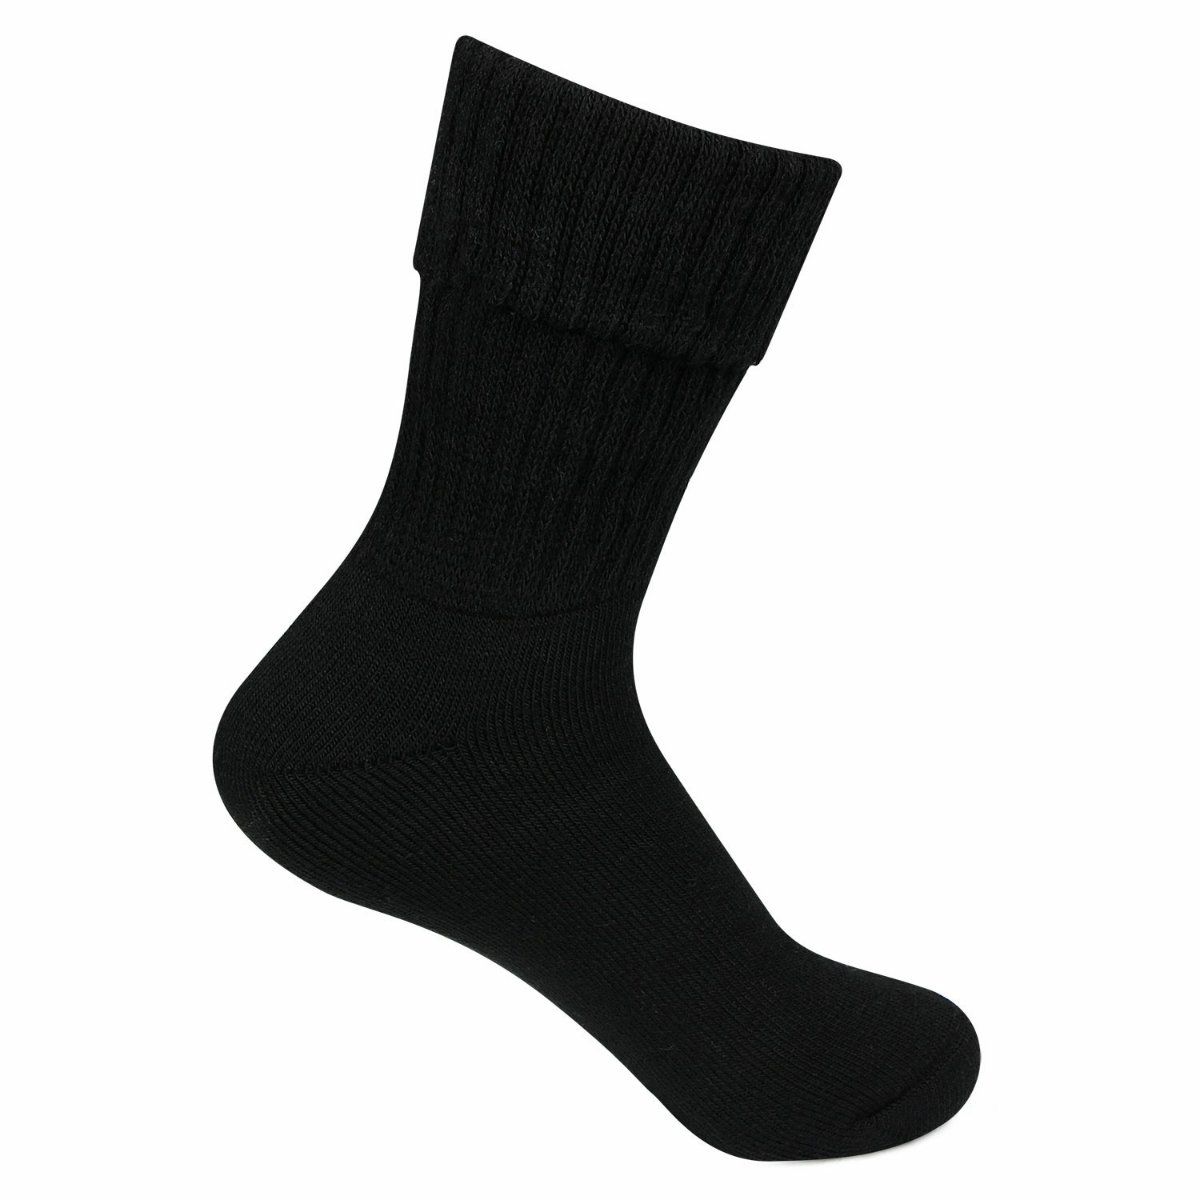 Best Lightweight Merino Wool Socks  Buy Merino Wool Socks  Wool Dress  Socks Men  Aliexpress